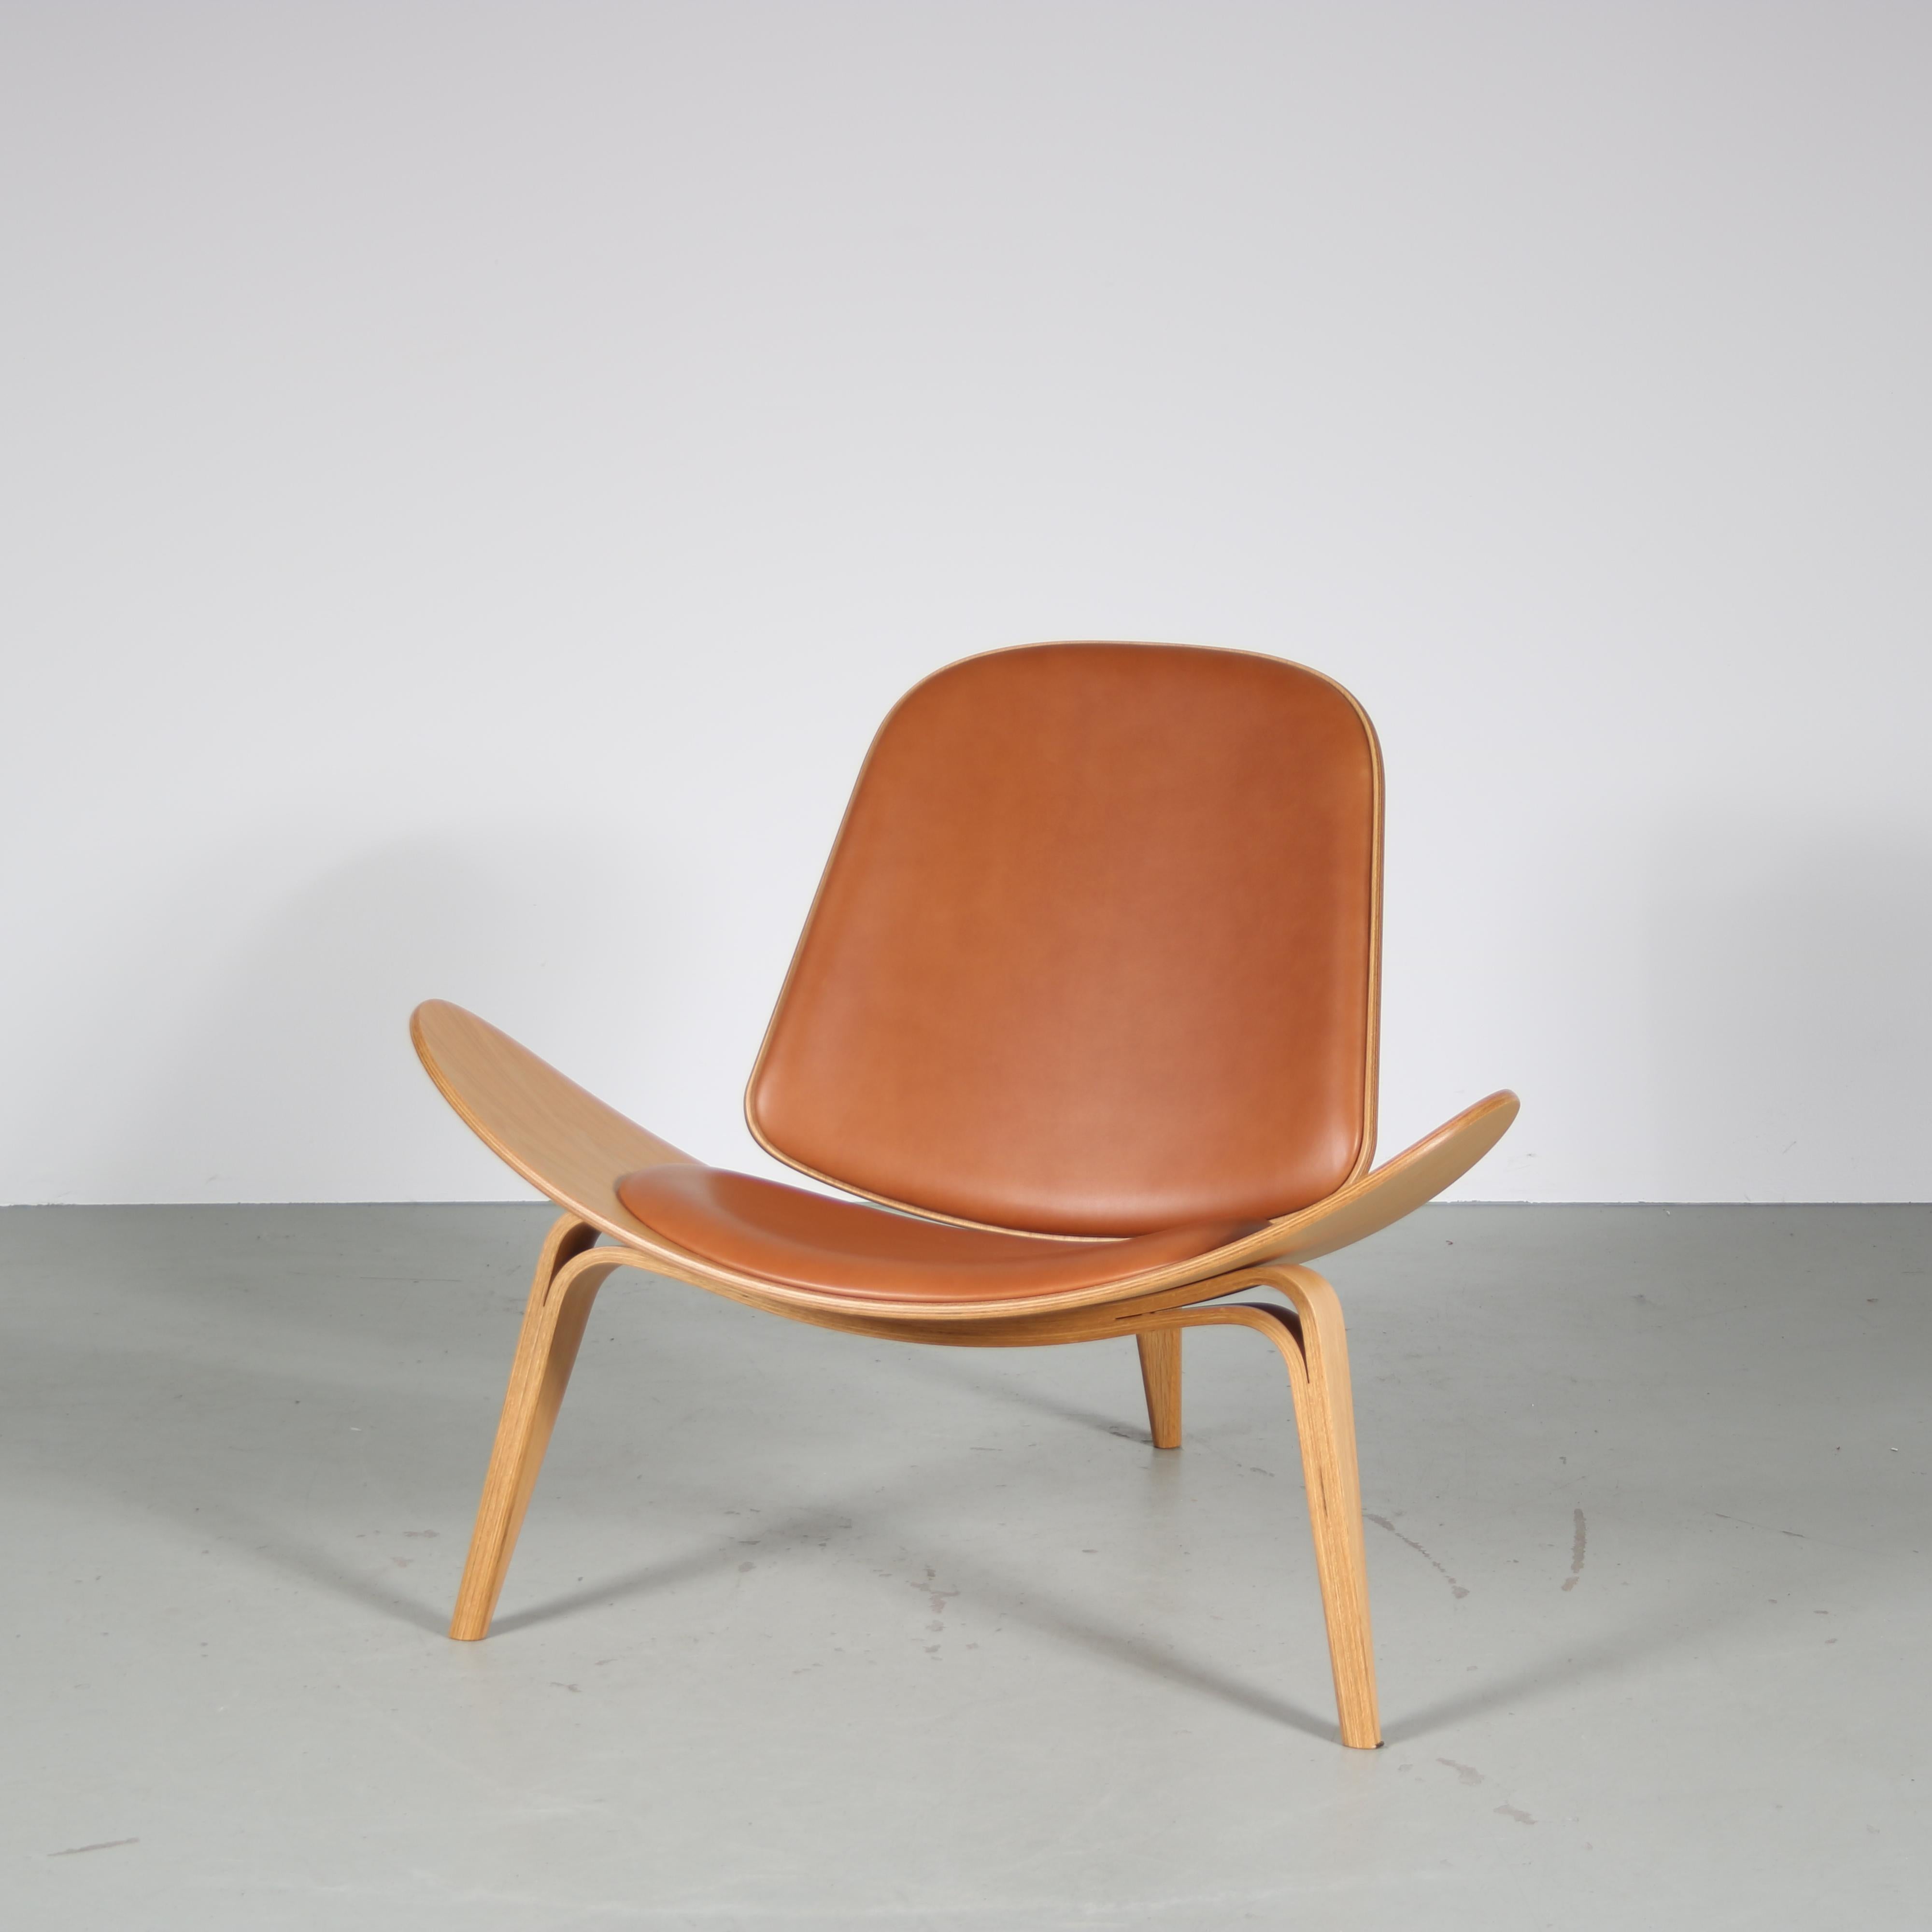 Leather “CH07” Chair by Hans J. Wegner for Carl Hansen, Denmark